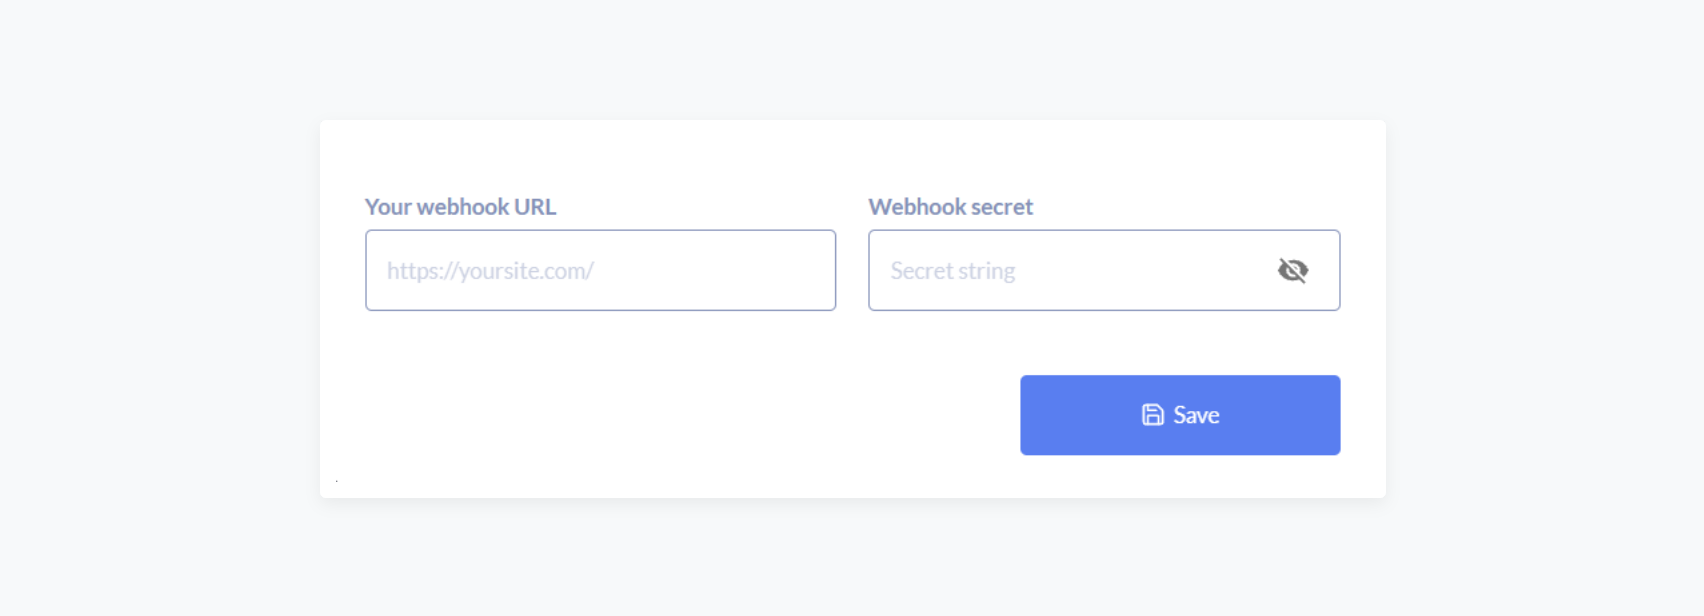 Metamap Dashboard screenshot: Configure new Webhook and Webhook URL and secret